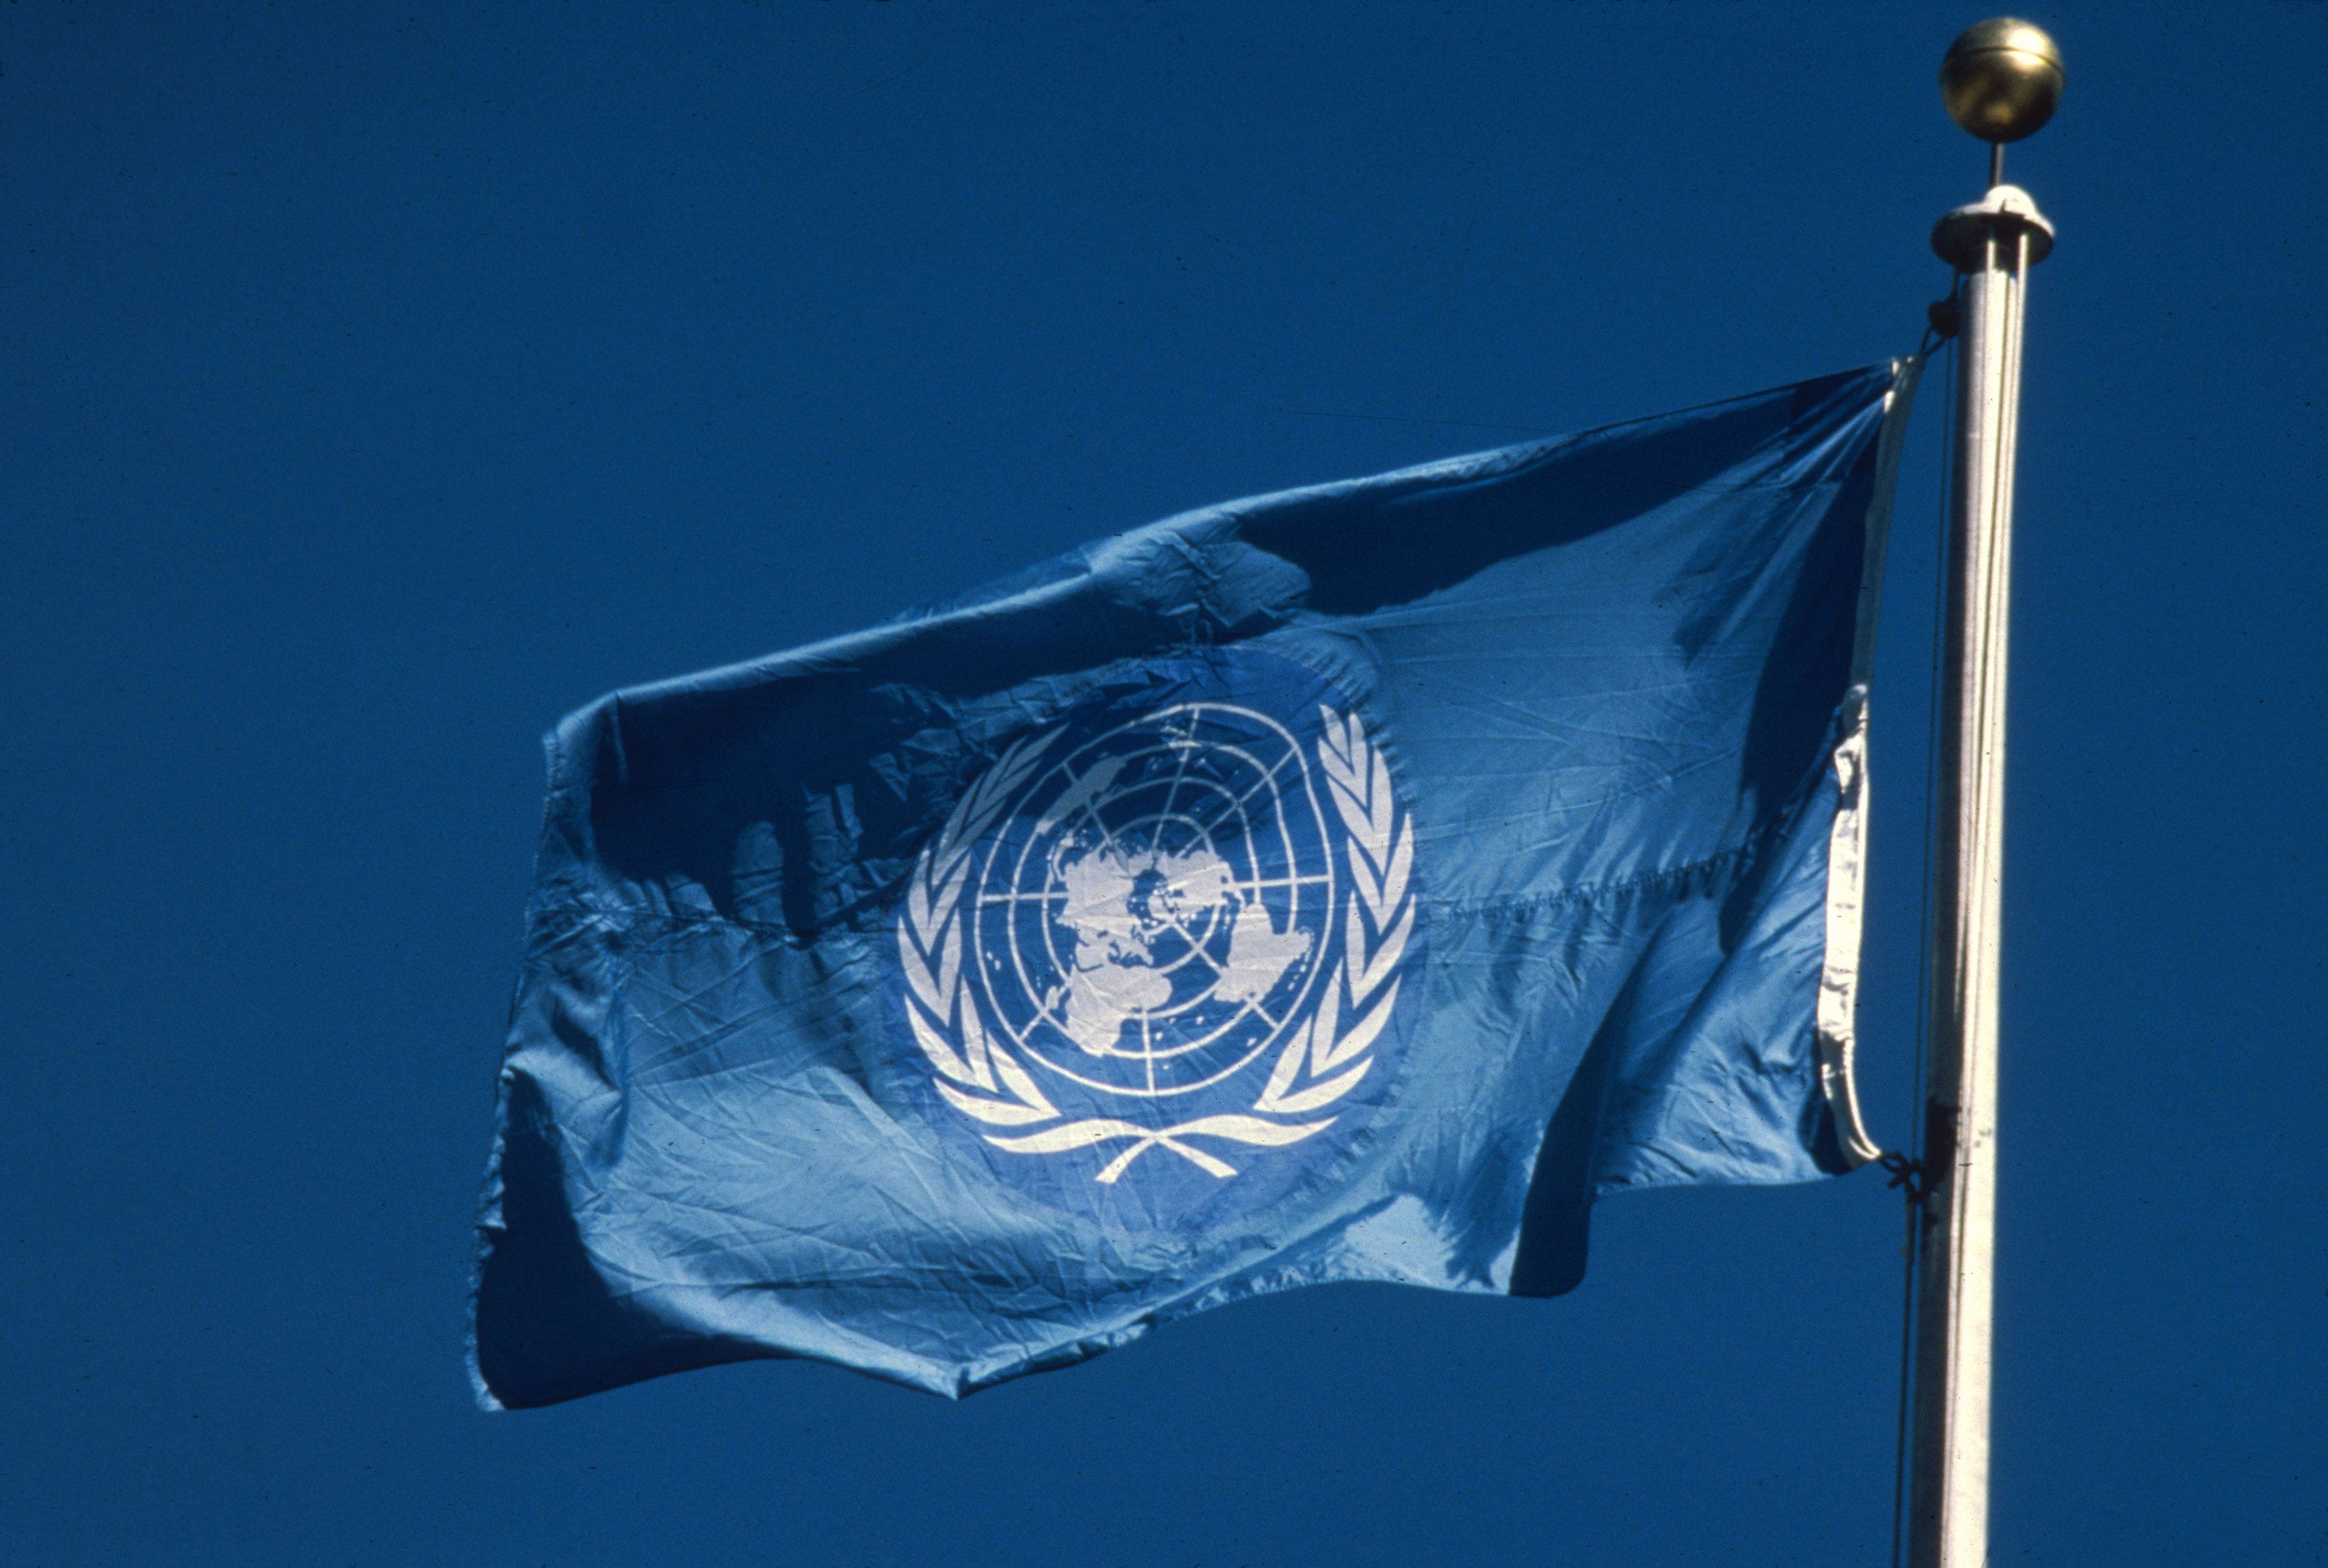 Р оон. Флаг ООН. Флаг ООН флаг ООН. Организация Объединенных наций (ООН). Флаг ООН на флагштоке.